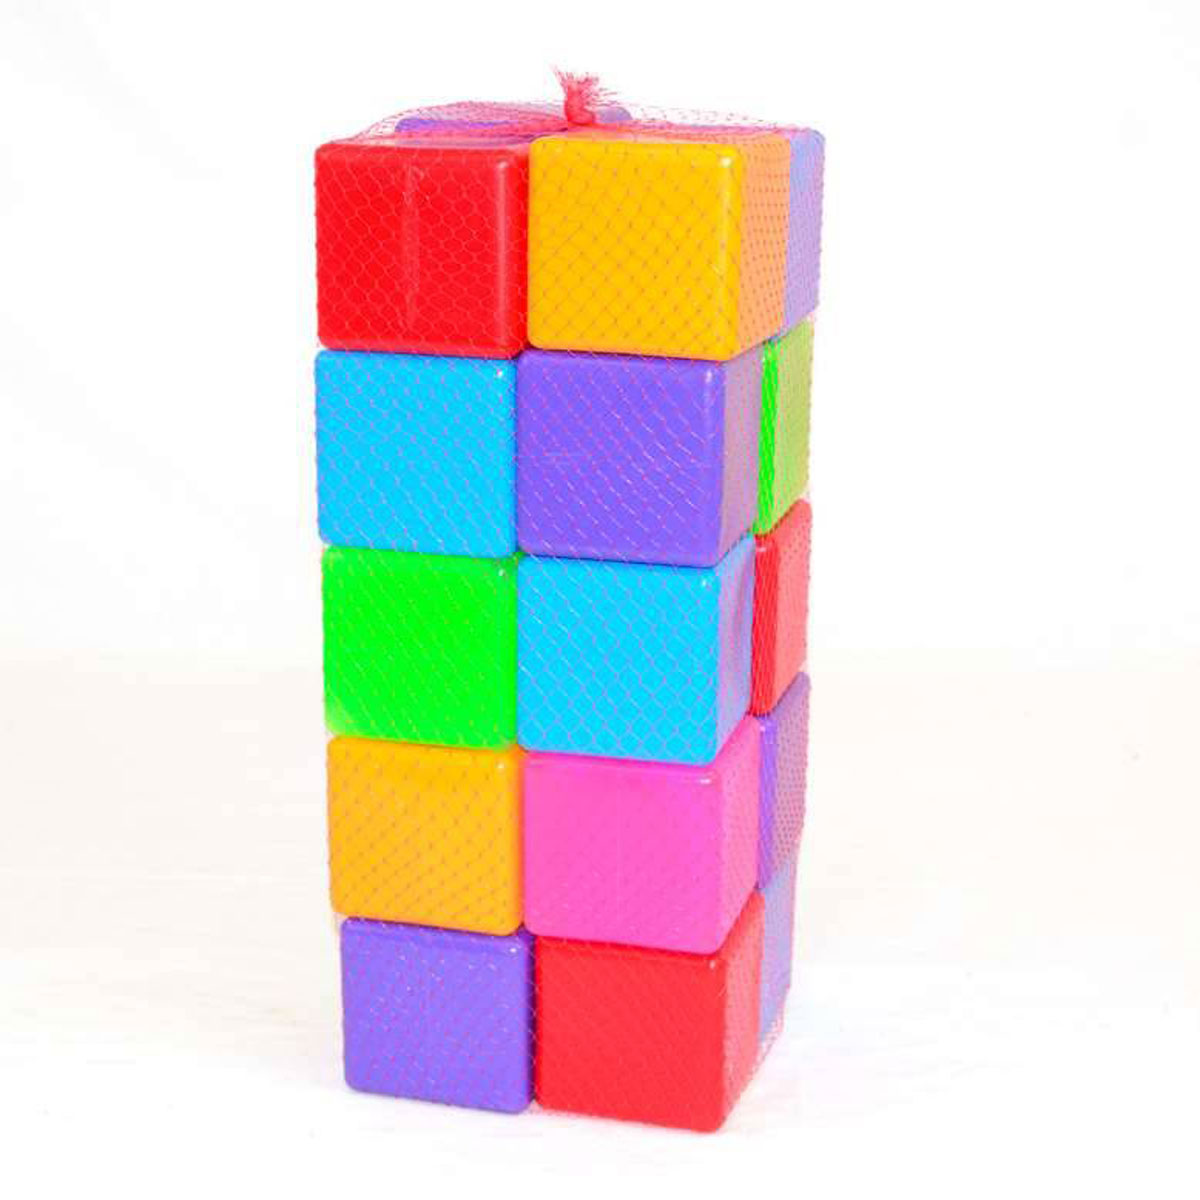 Іграшкові кубики кольорові Бамсік